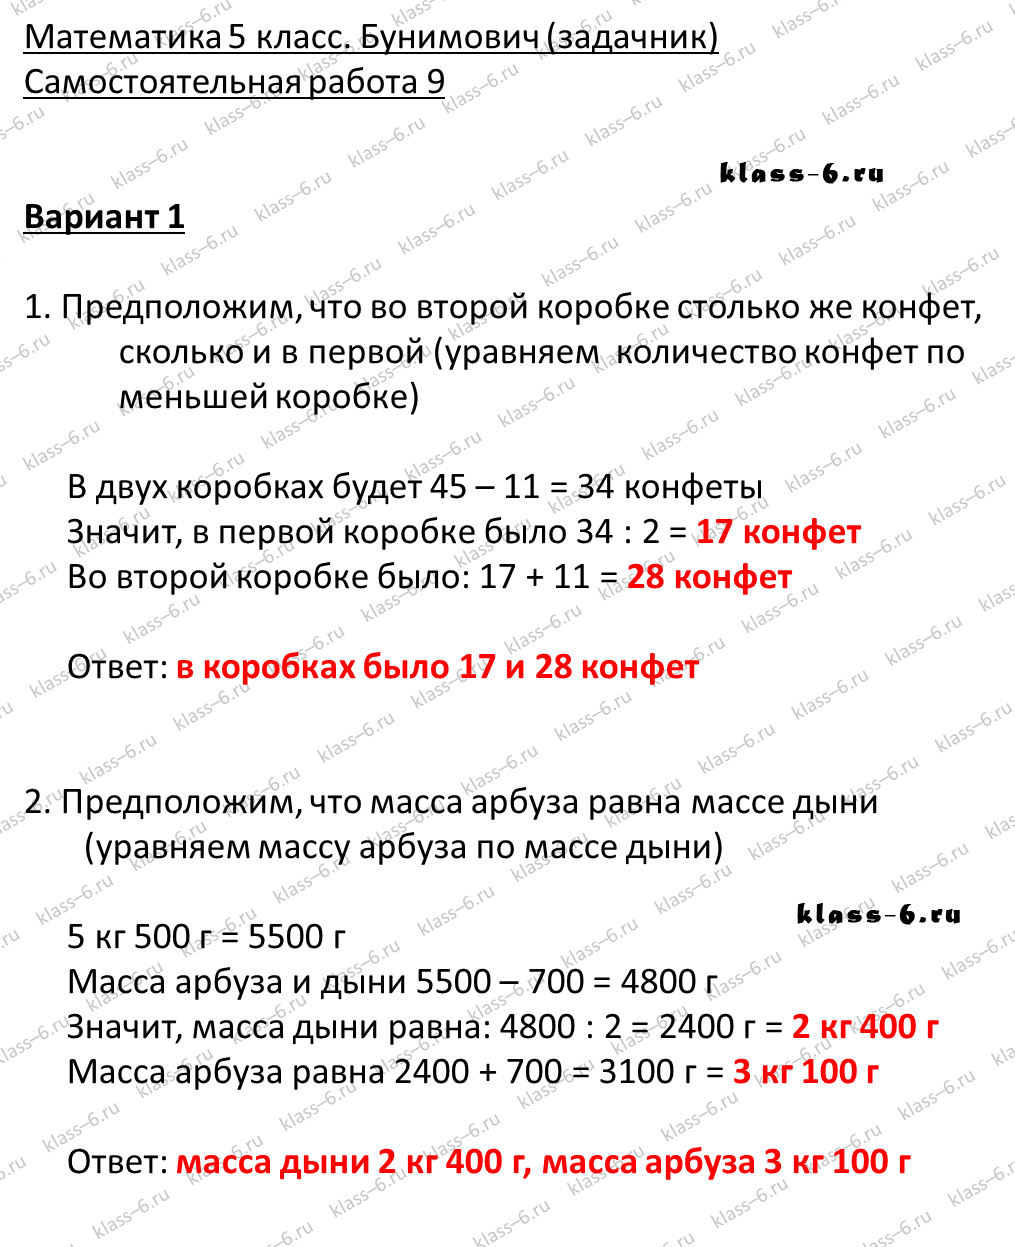 решебник и гдз по математике задачник Бунимович 5 класс самостоятельная работа 9-v1